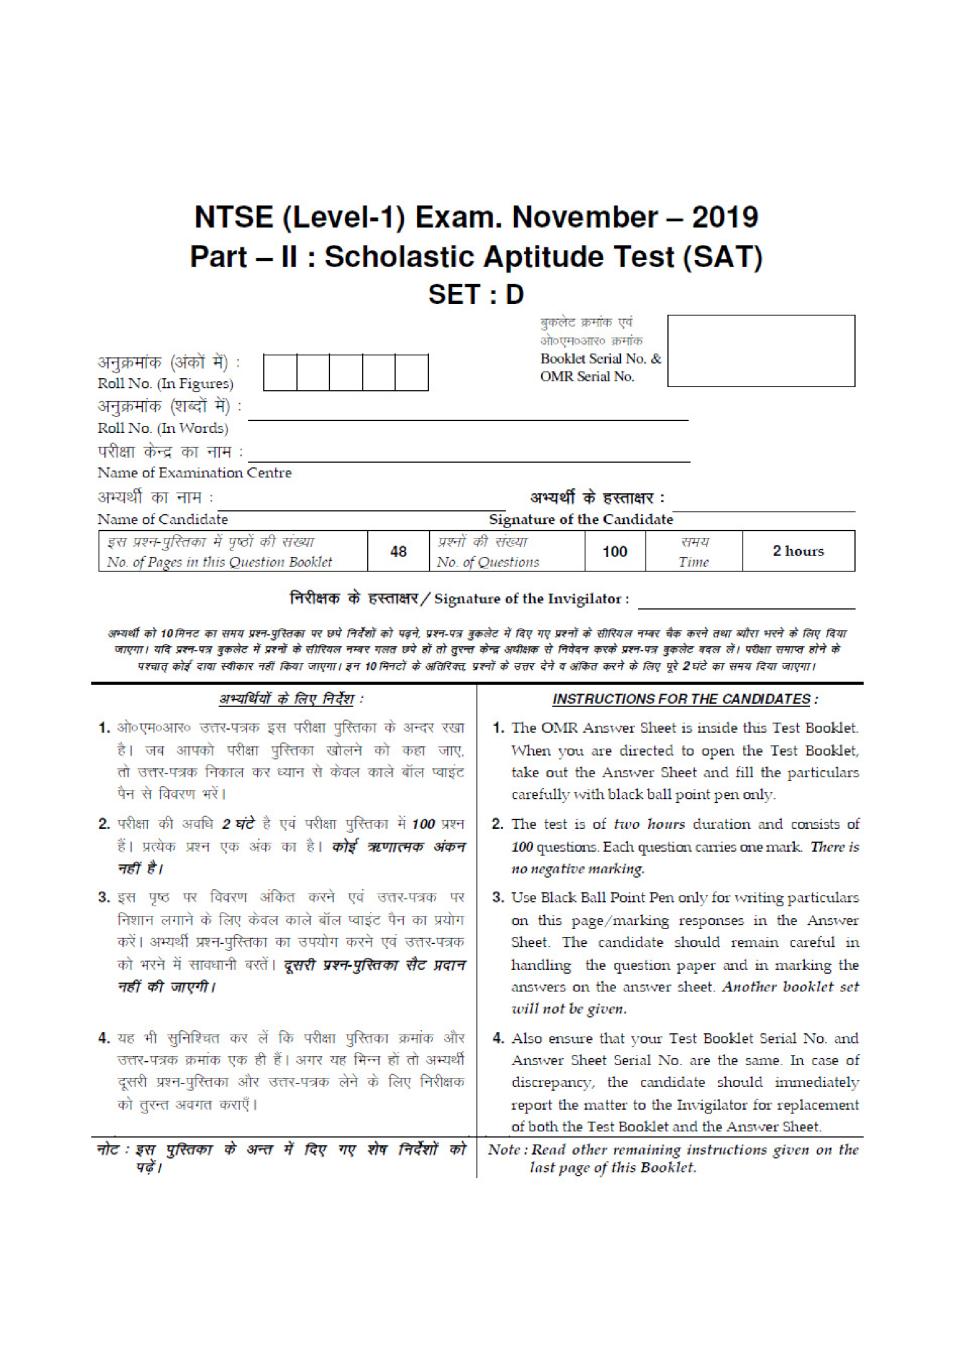 Haryana NTSE Nov 2019 SAT Question Paper Set D - Page 1